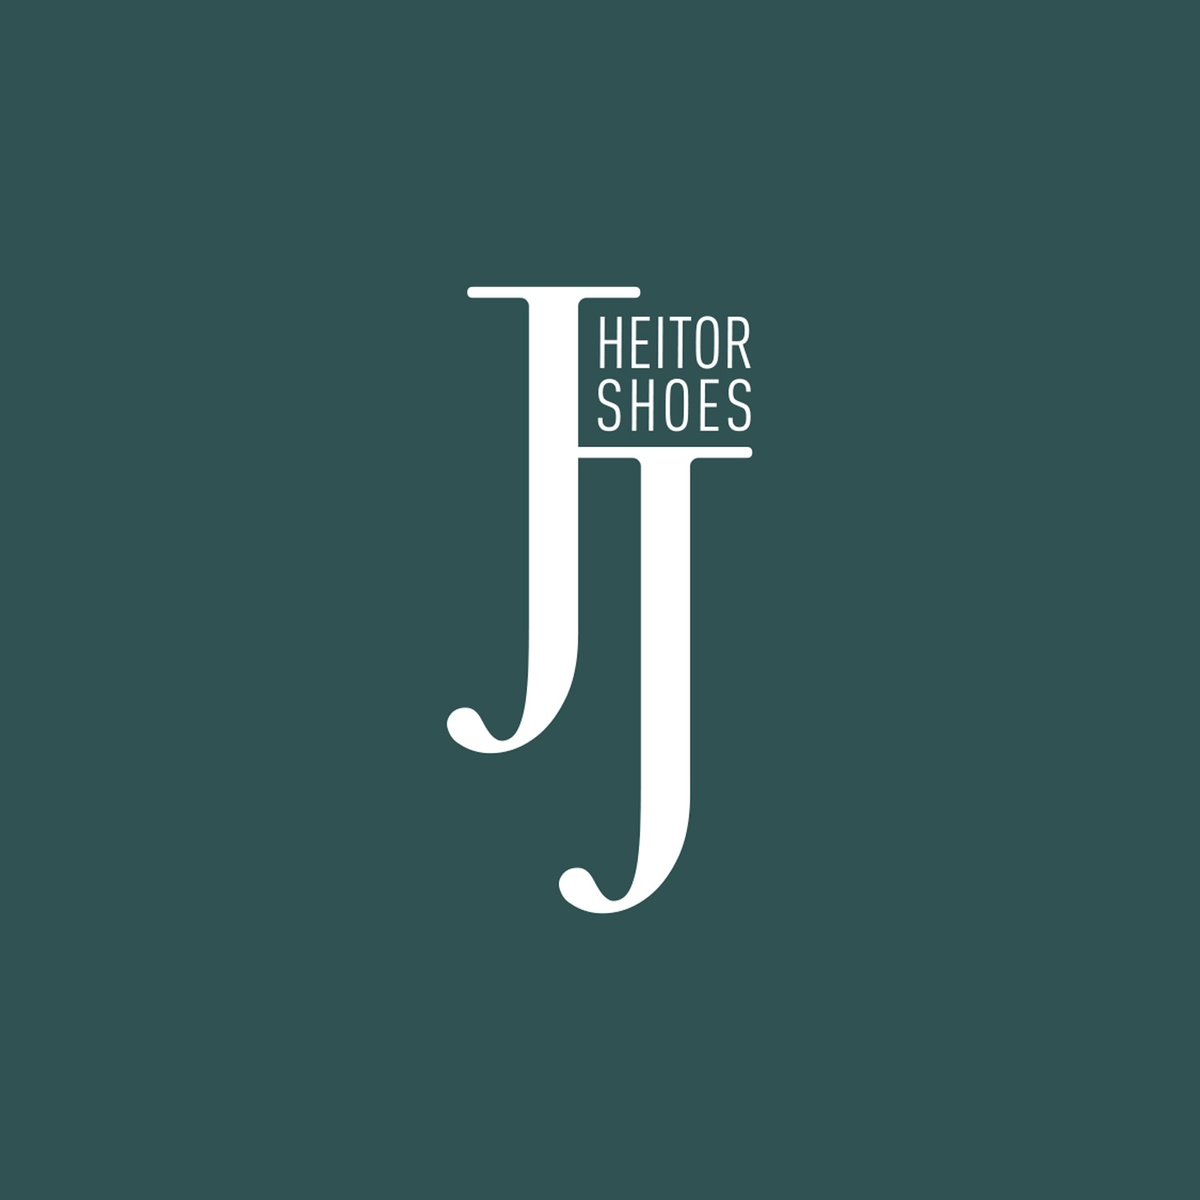 JJHeitor lança marca própria no seu 50º aniversário